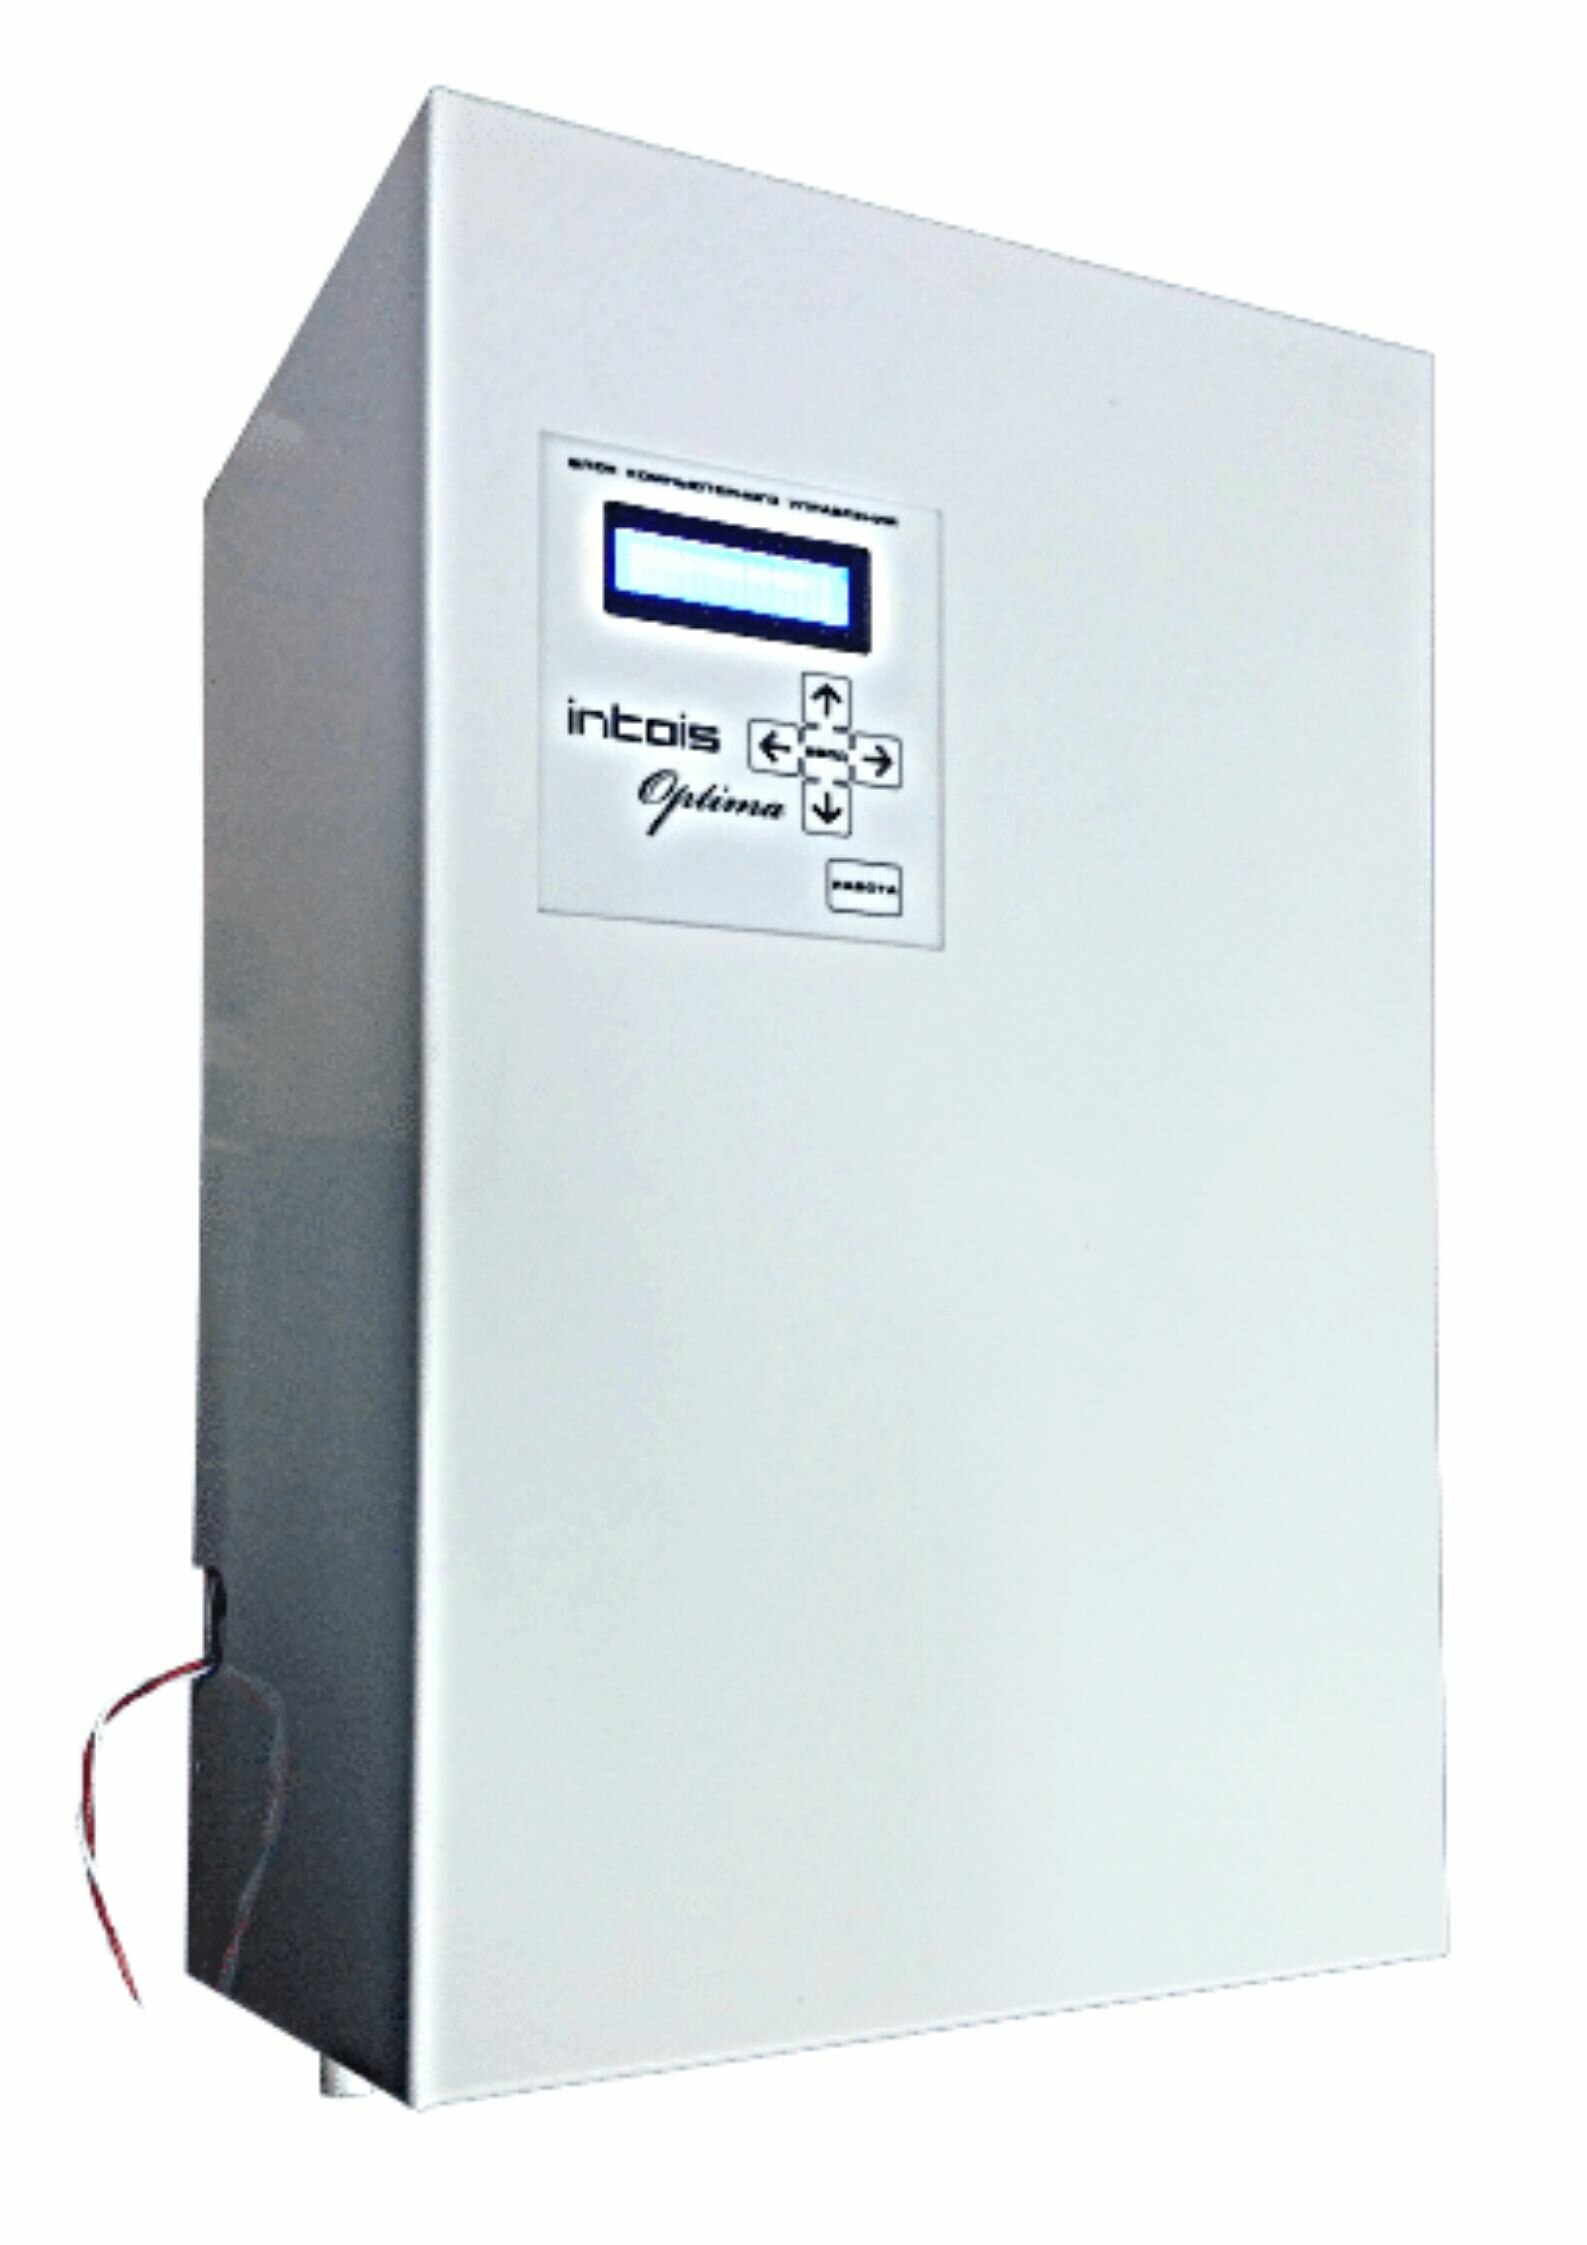 Электрический котел отопления электрокотел Интоис Оптима Н 12 кВт настенный одноконтурный.